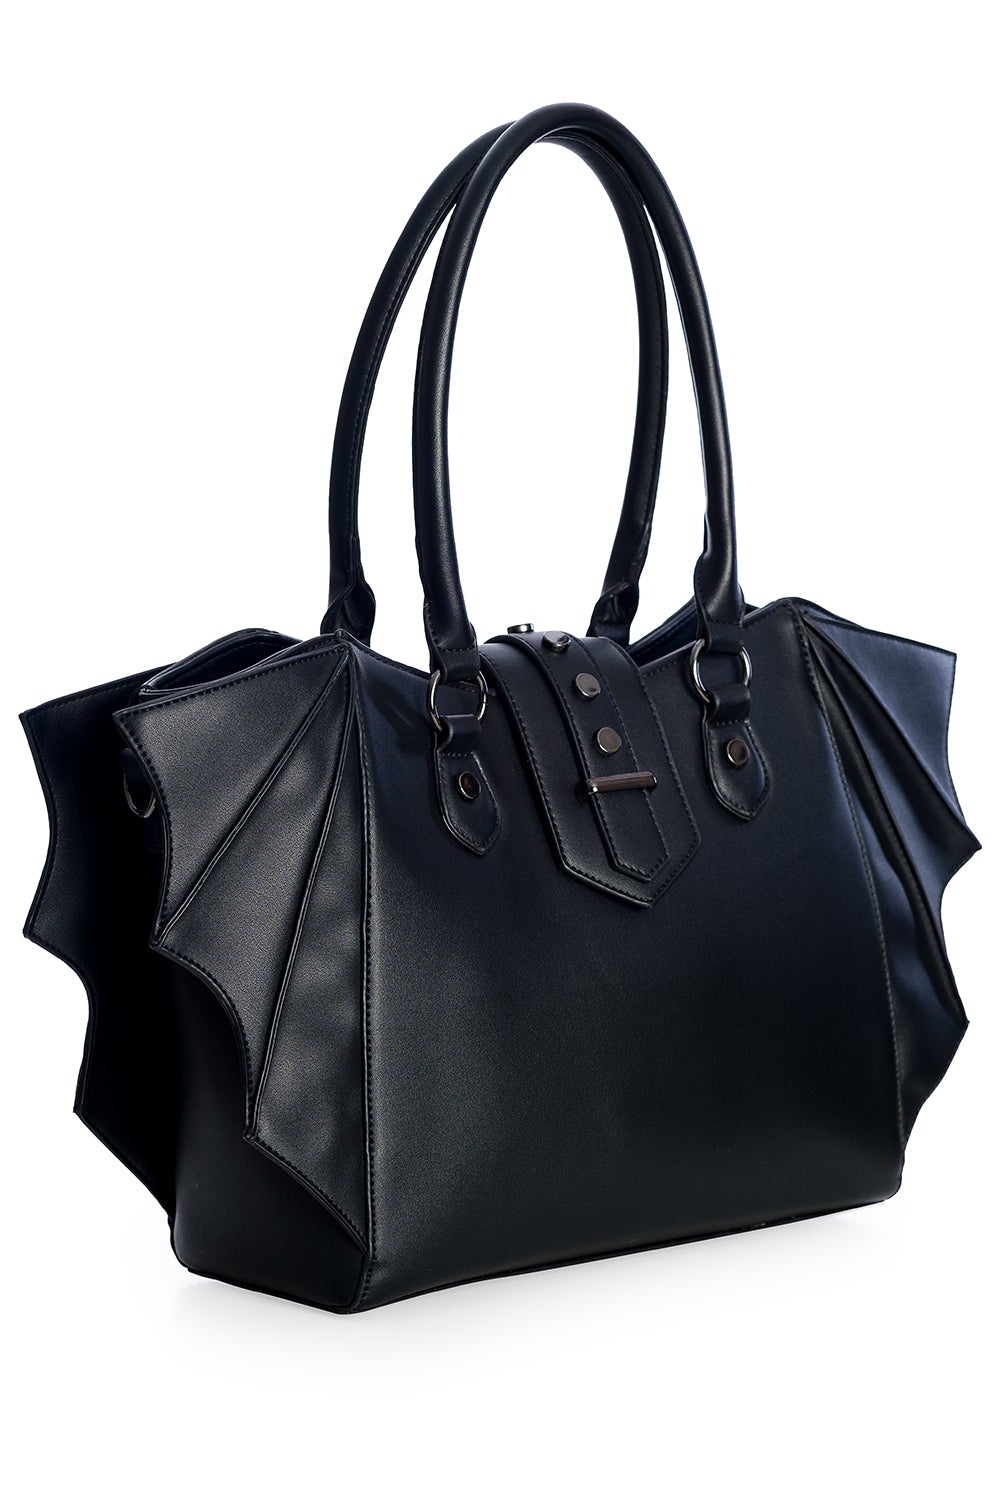 Black handbag with bat wing side details 